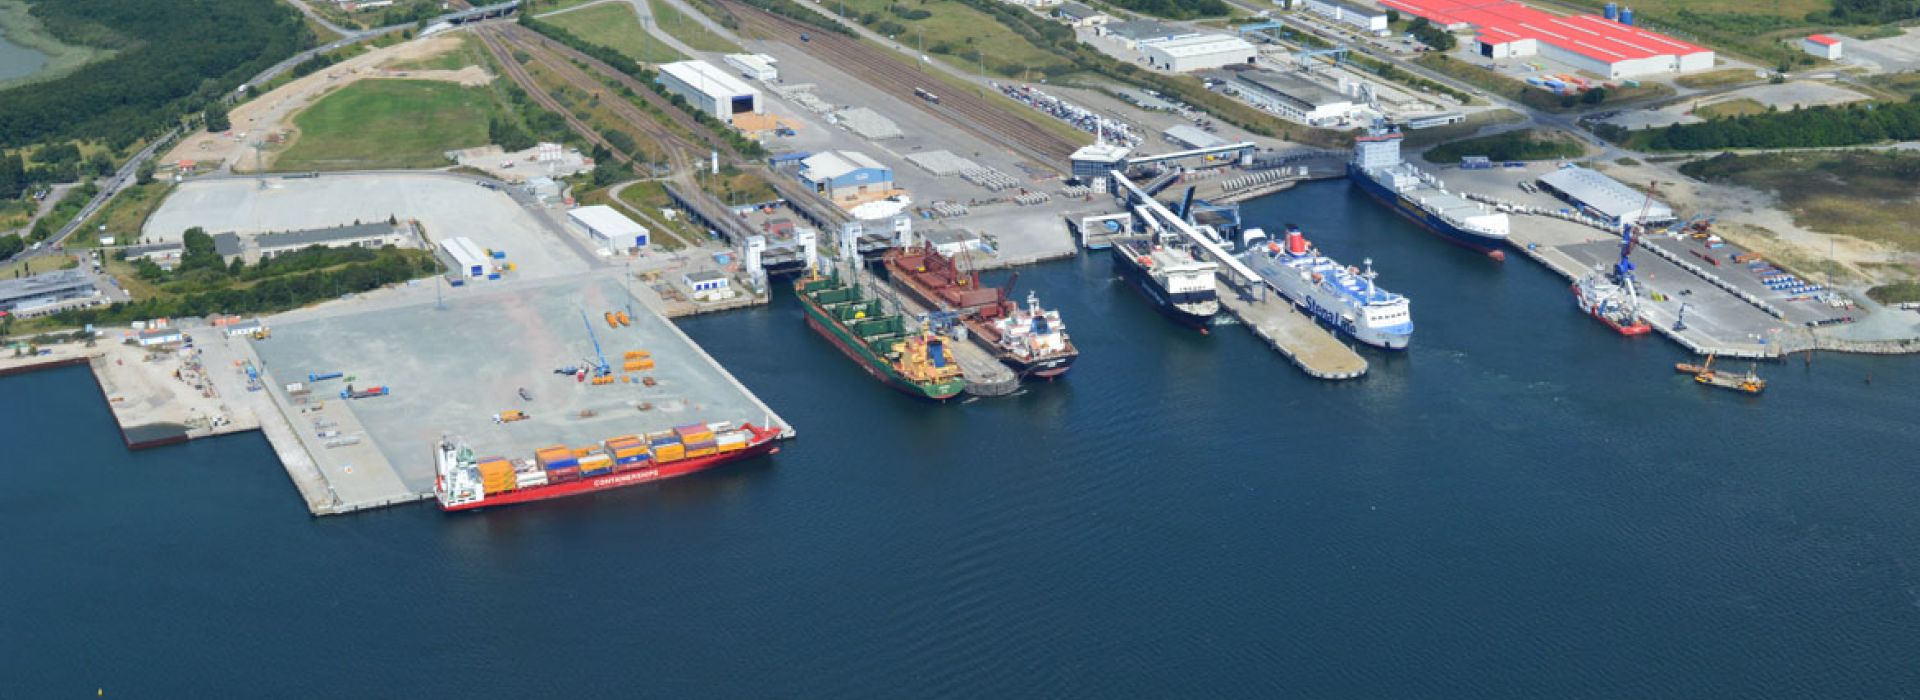 Сенатори США попередили німецький порт Мукран про санкції у зв'язку з «Північним потоком 2»